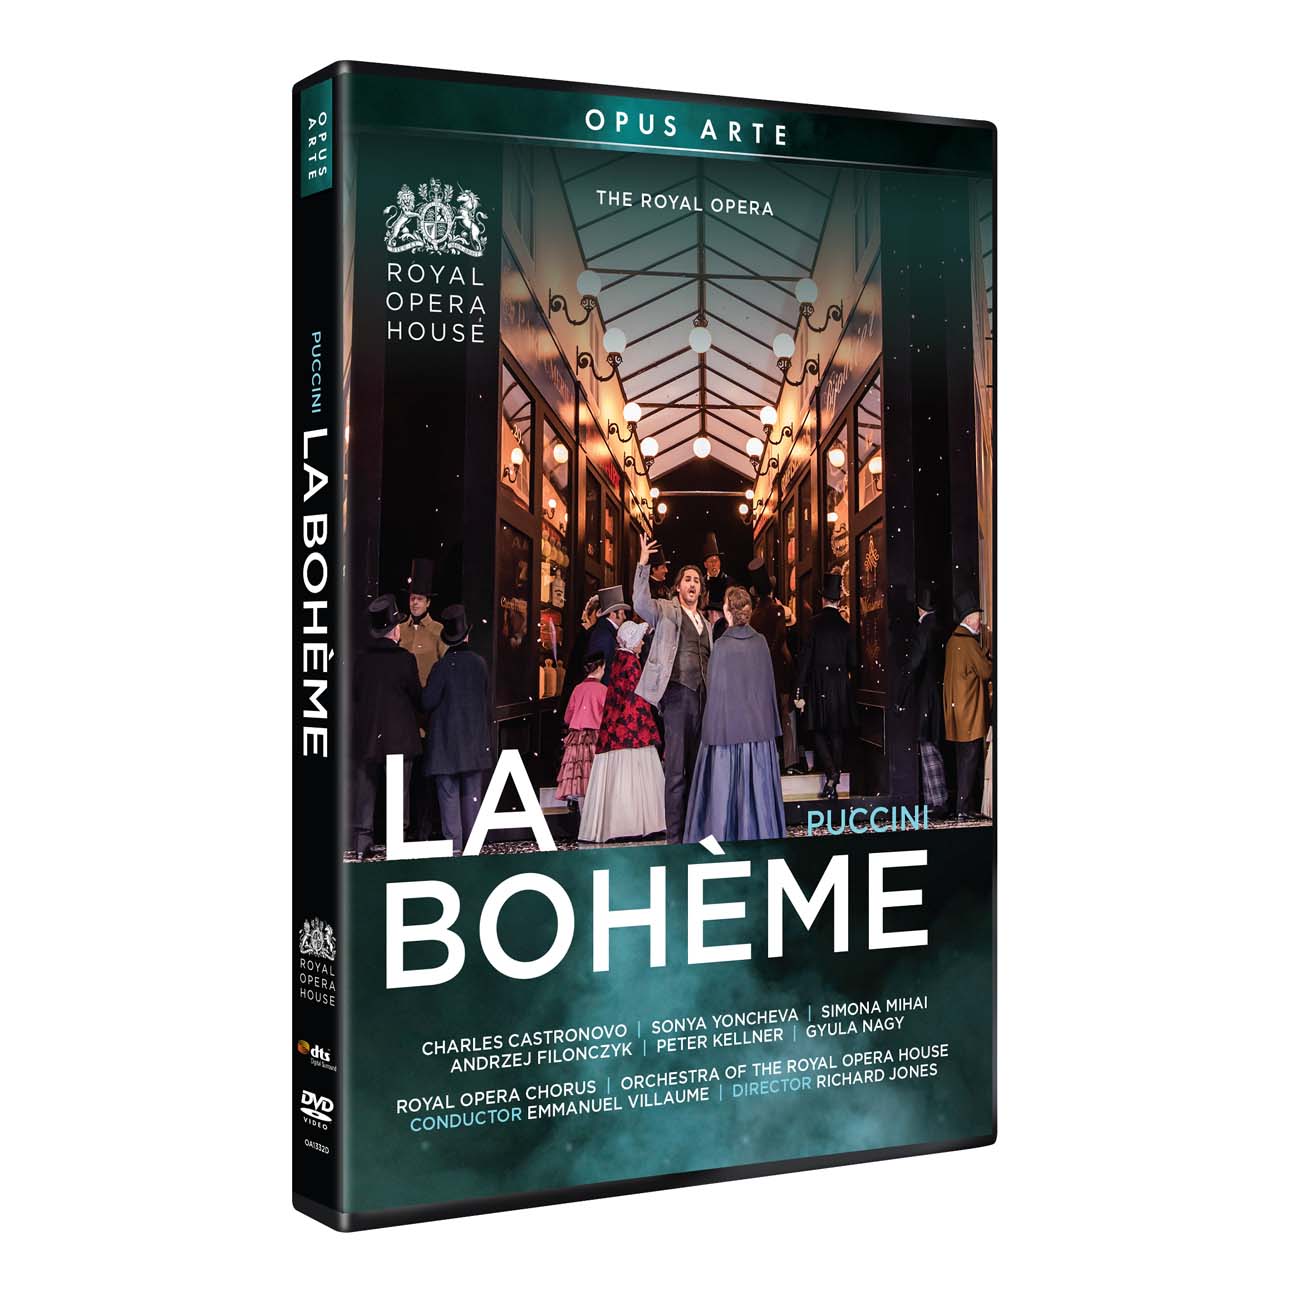 Boheme (dvd)